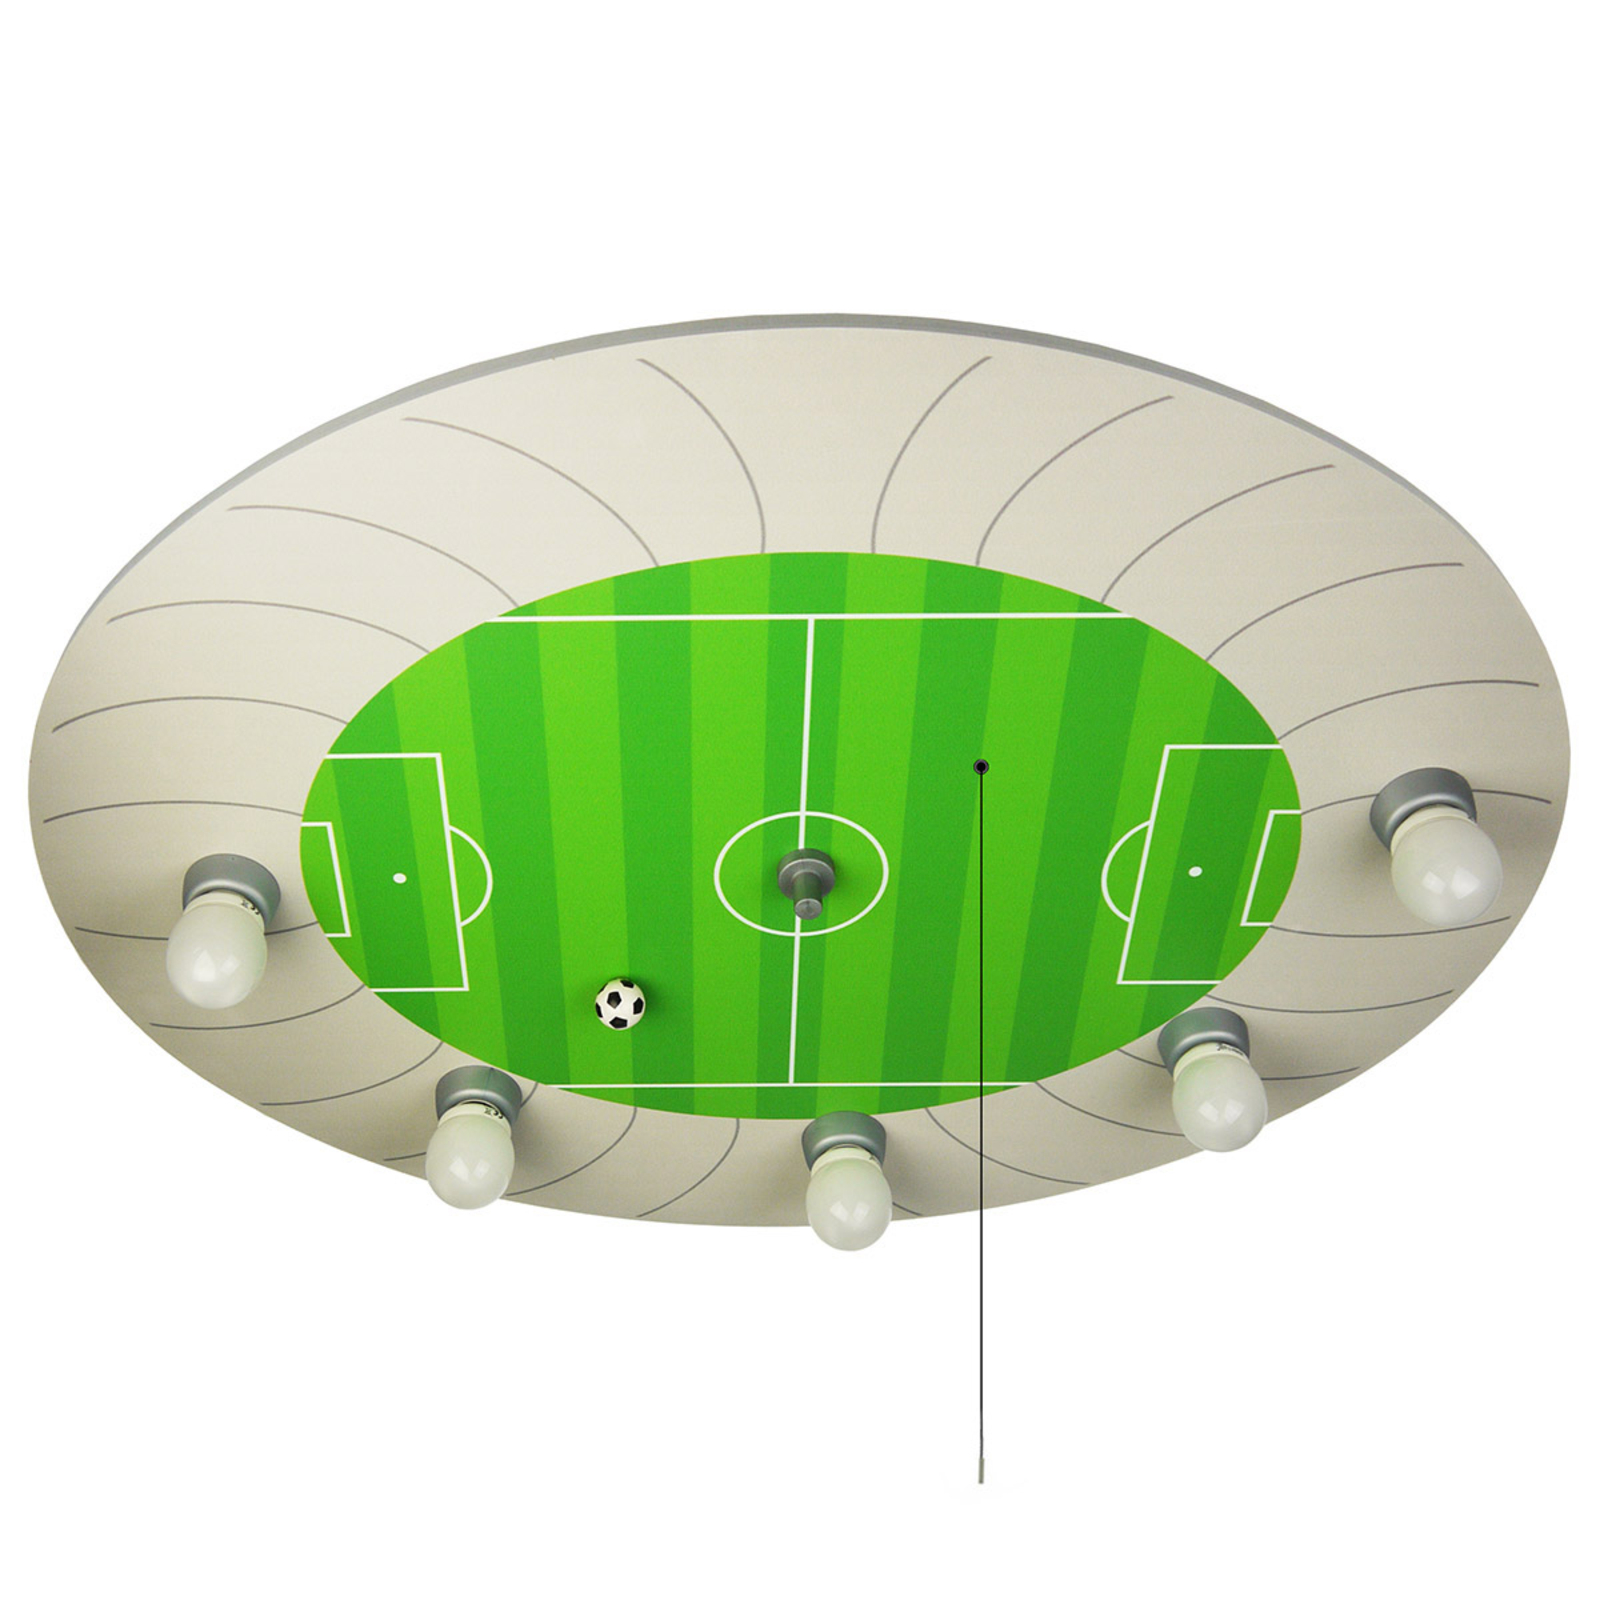 Fotbollsstadion taklampa med Alexa-modul